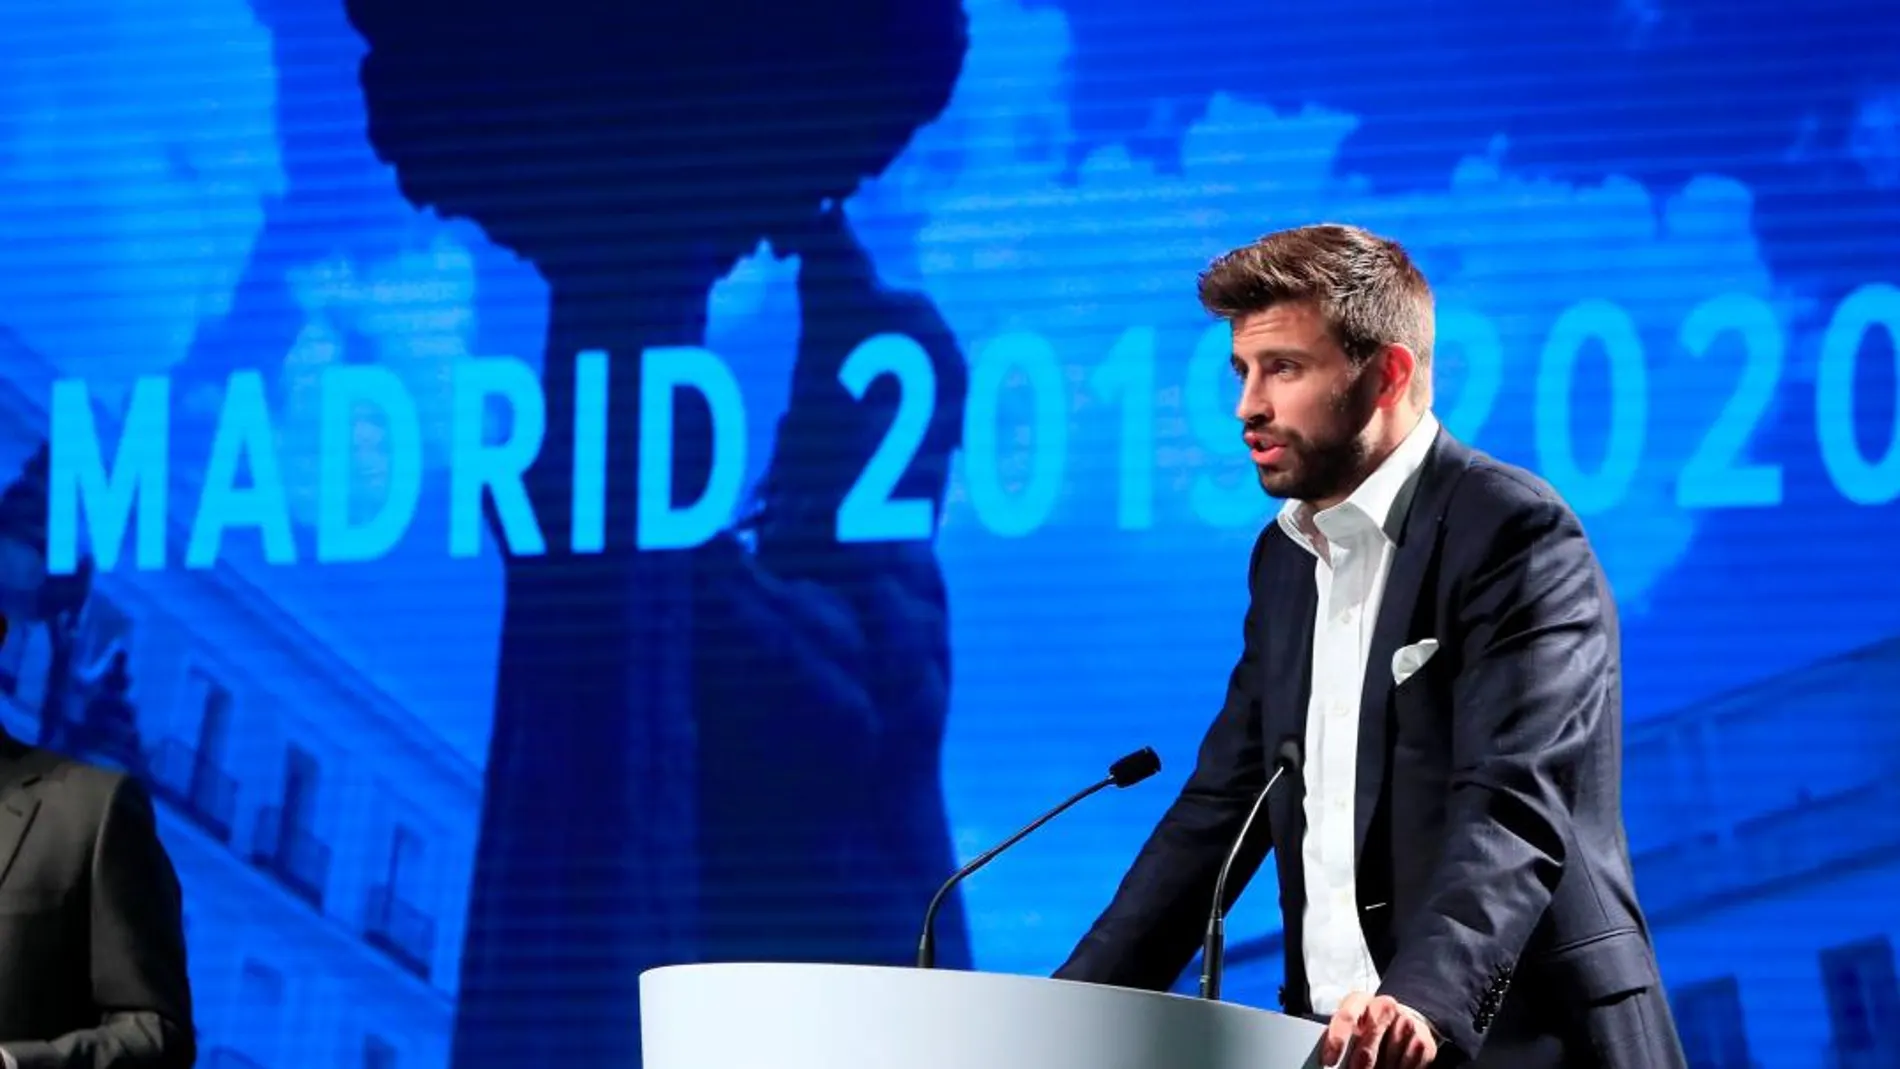 El futbolista Gerard Piqué, fundador y presidente de la empresa Kosmos, durante el acto de presentación de Madrid como sede de la Copa Davis / Foto: Efe